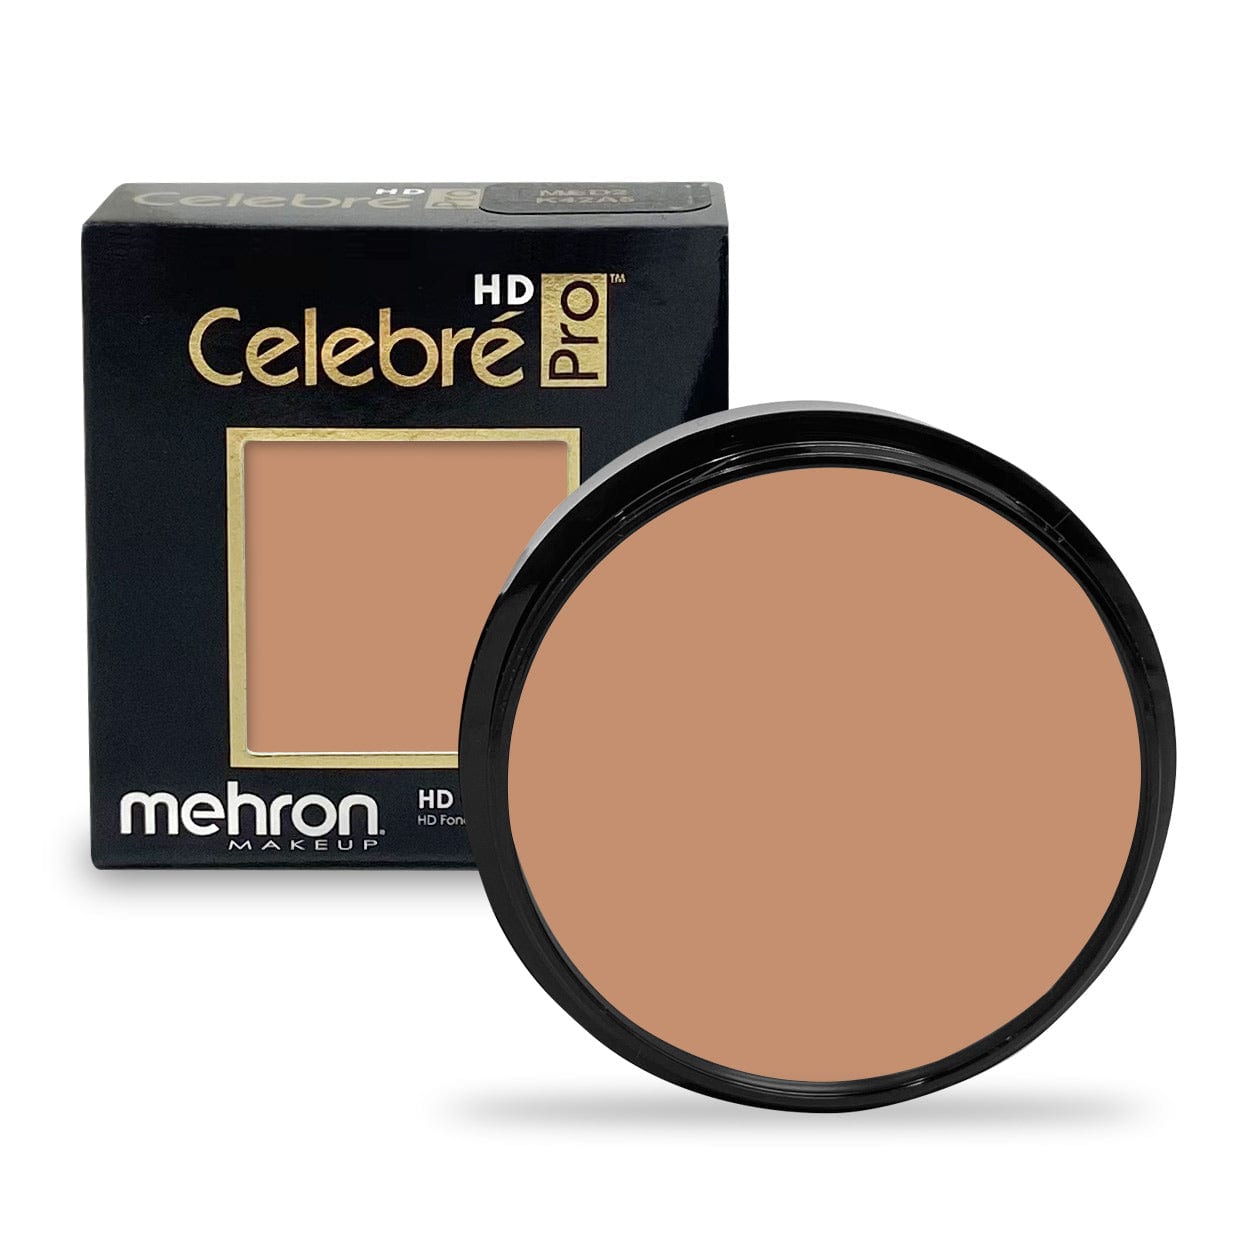 Mehron Celebre Pro HD-Cream 25g - Medium Dark 2 - Mehron